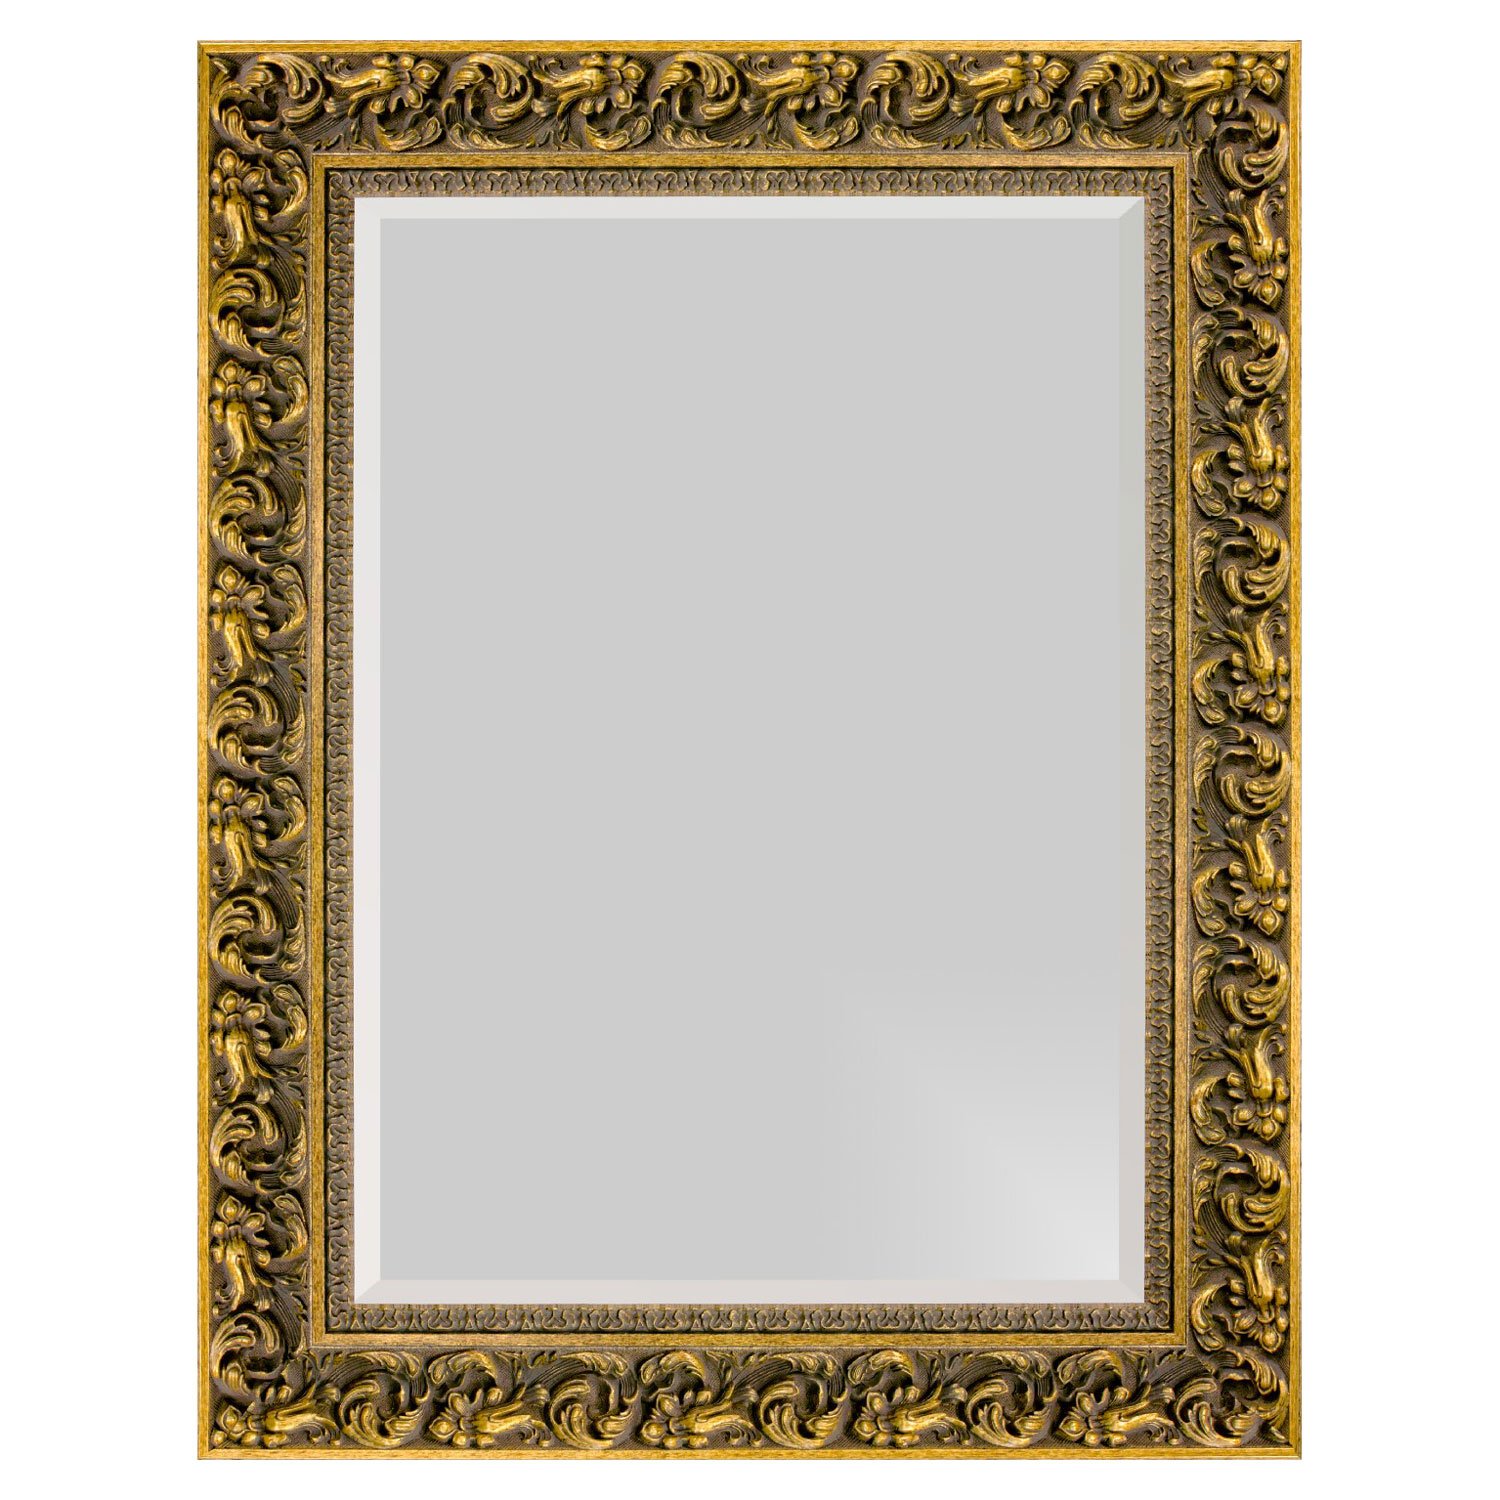 Moldura. Espelho decorativo com dourada